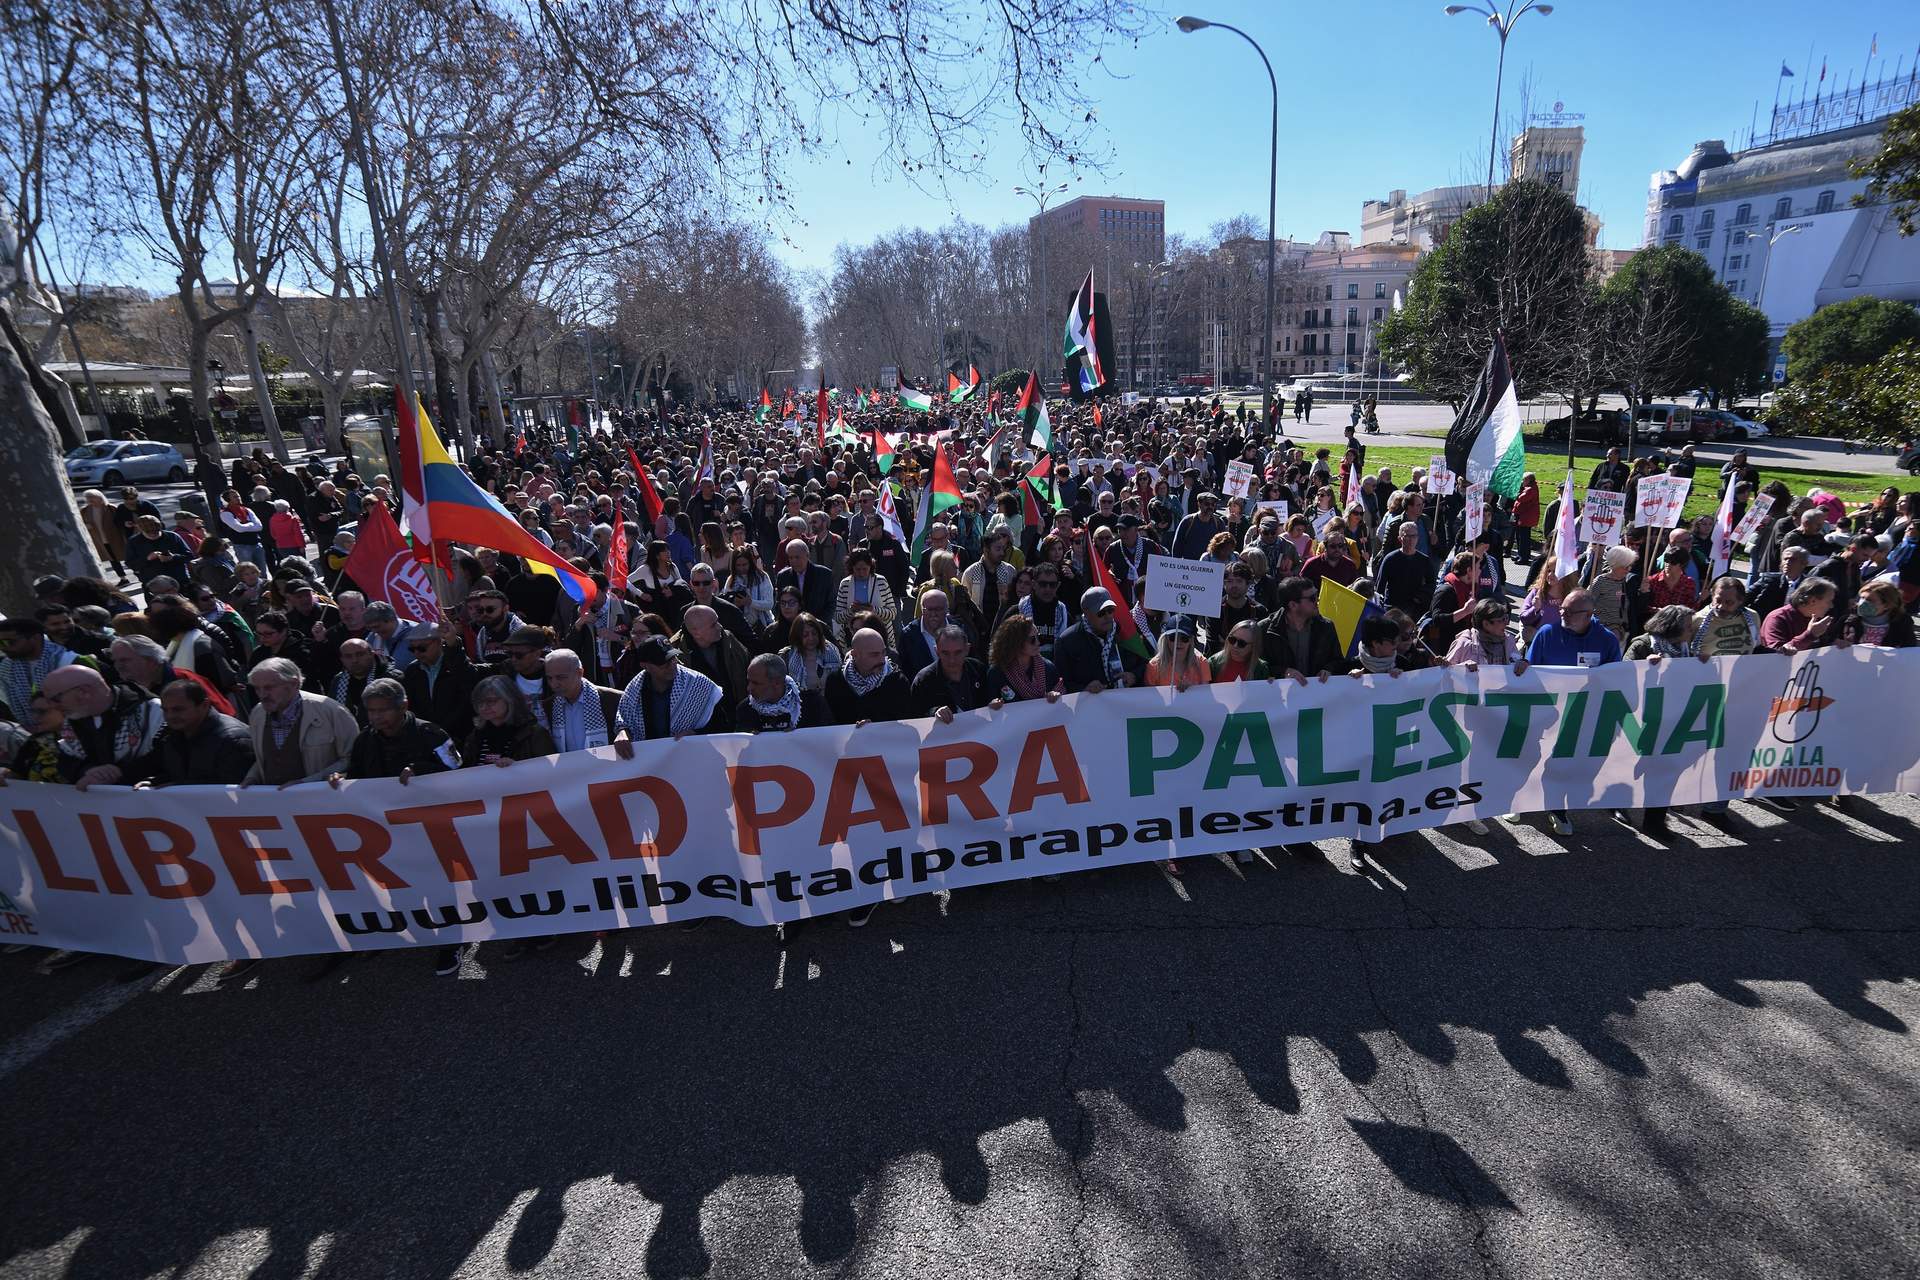 Óscar Puente y los cinco ministros de Sumar participan en una manifestación en Madrid de apoyo a Palestina